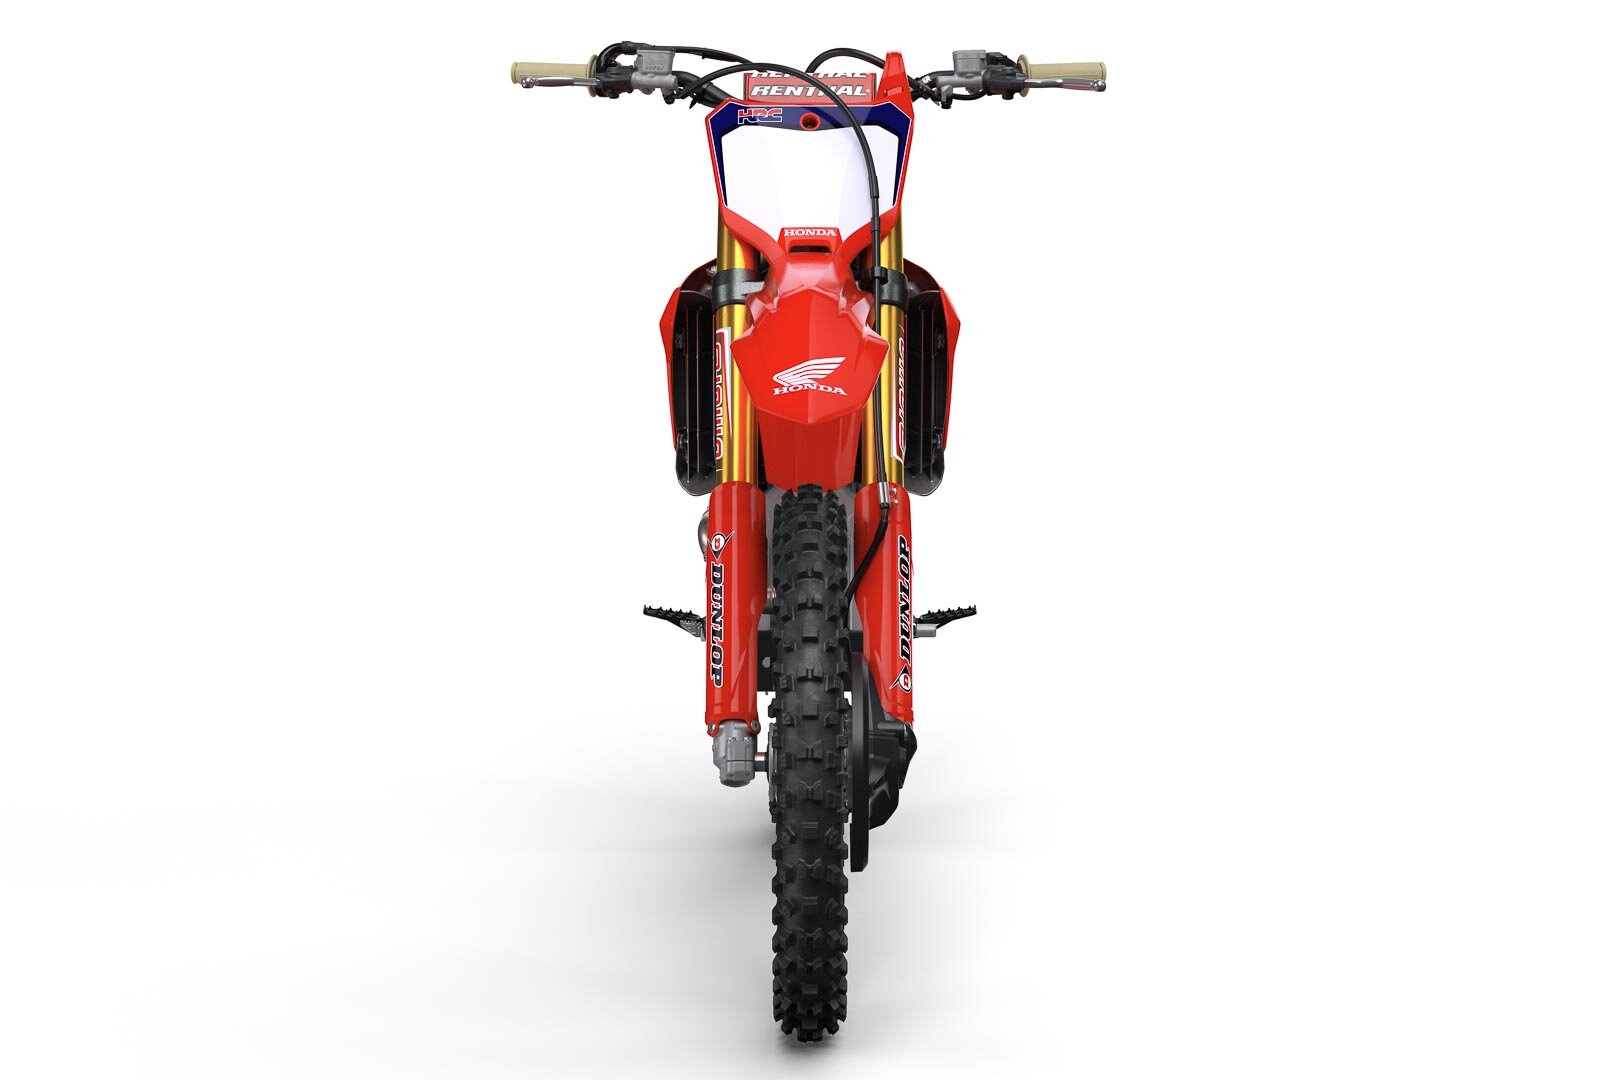 2021-Honda-CRF450RWE-First-Look-works-edition-motocross-supercross-motorcycle-1.jpg